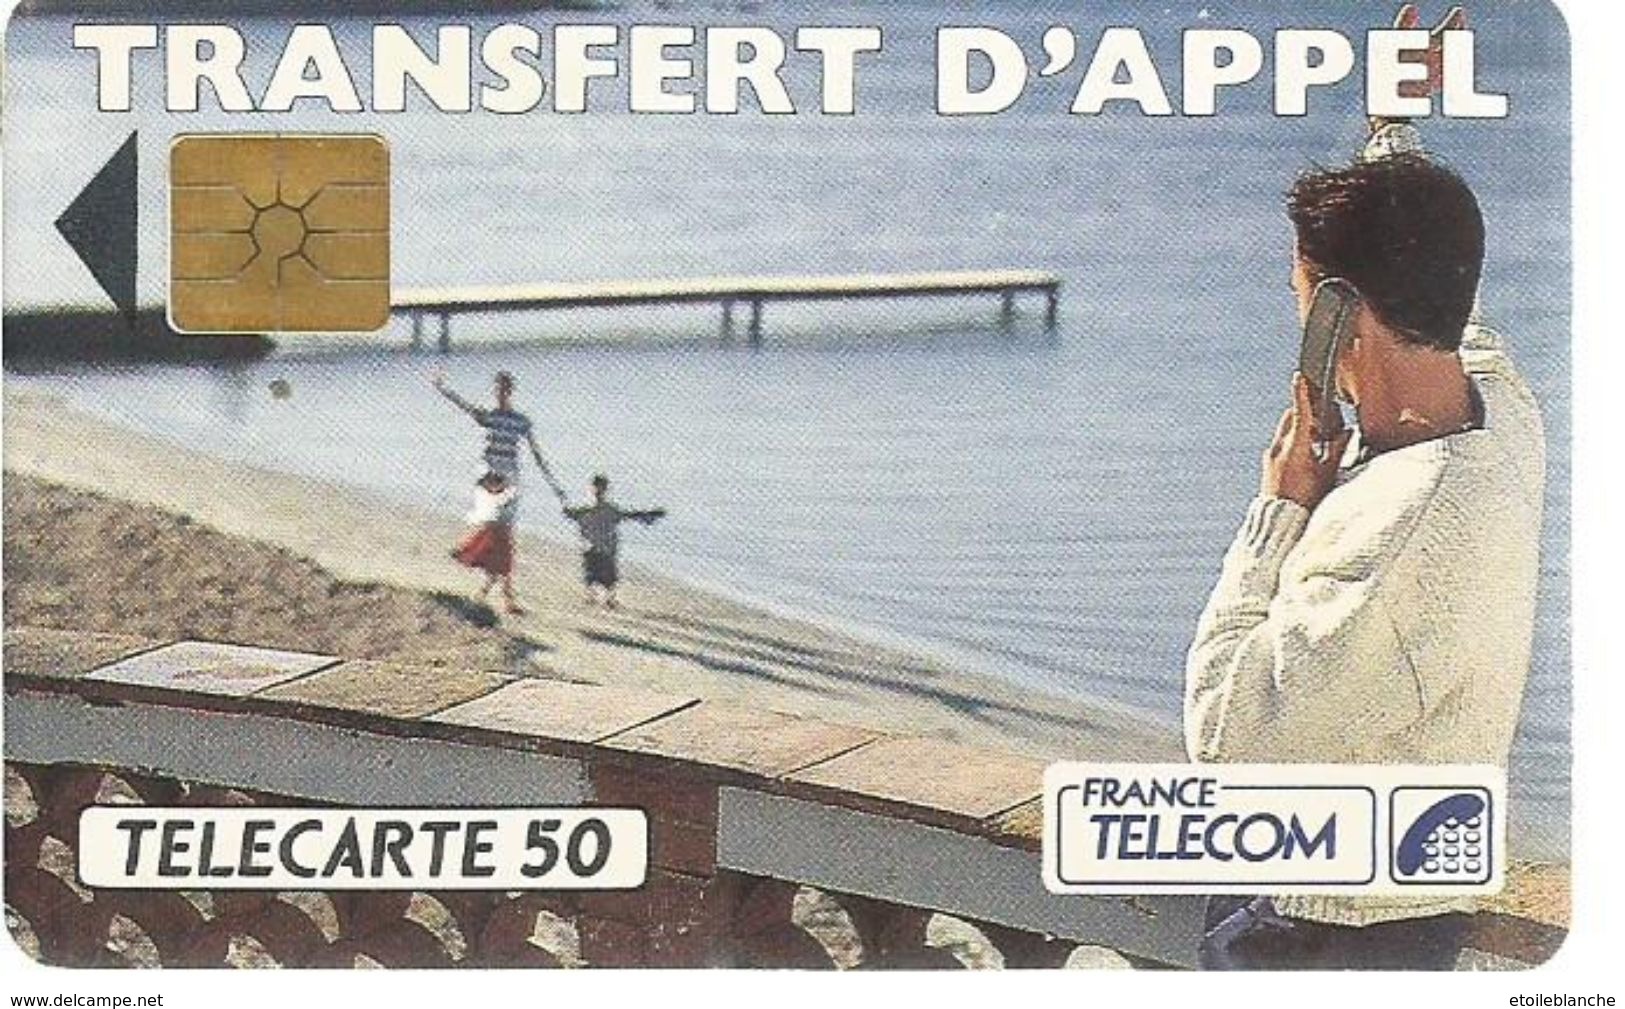 Telecarte France Telecom 1992 - Publicité, Transfert D'appel - Homme En Vacances, Plage, Famille - Opérateurs Télécom